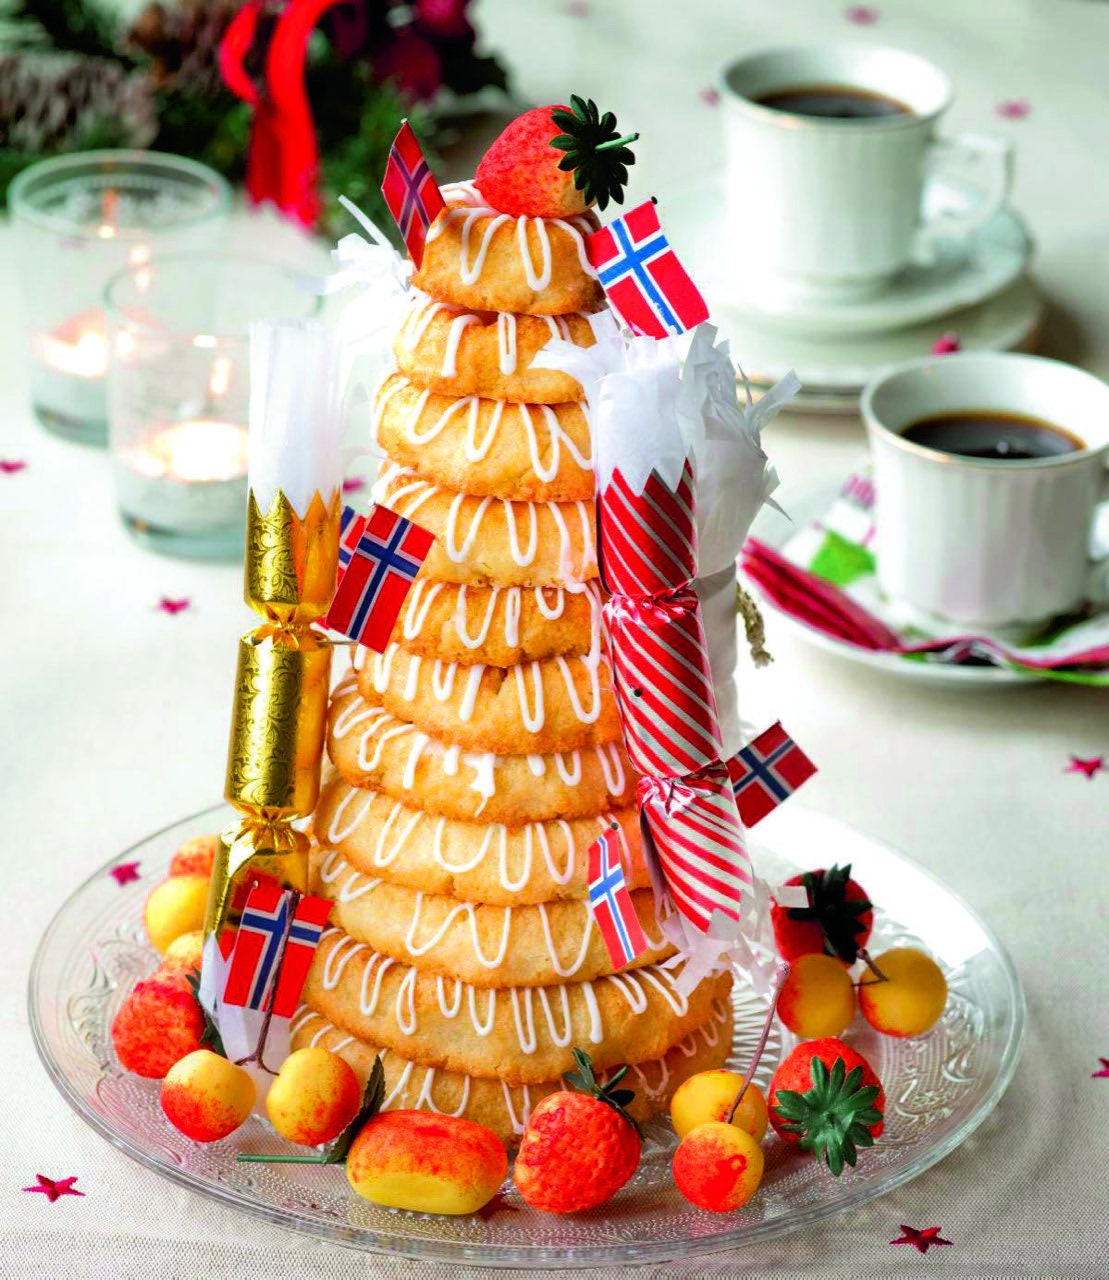 Kransekake Cake Pans Scandinavian Wedding Molds/Form Hoyang 6 Pans/18 Rings  Nice